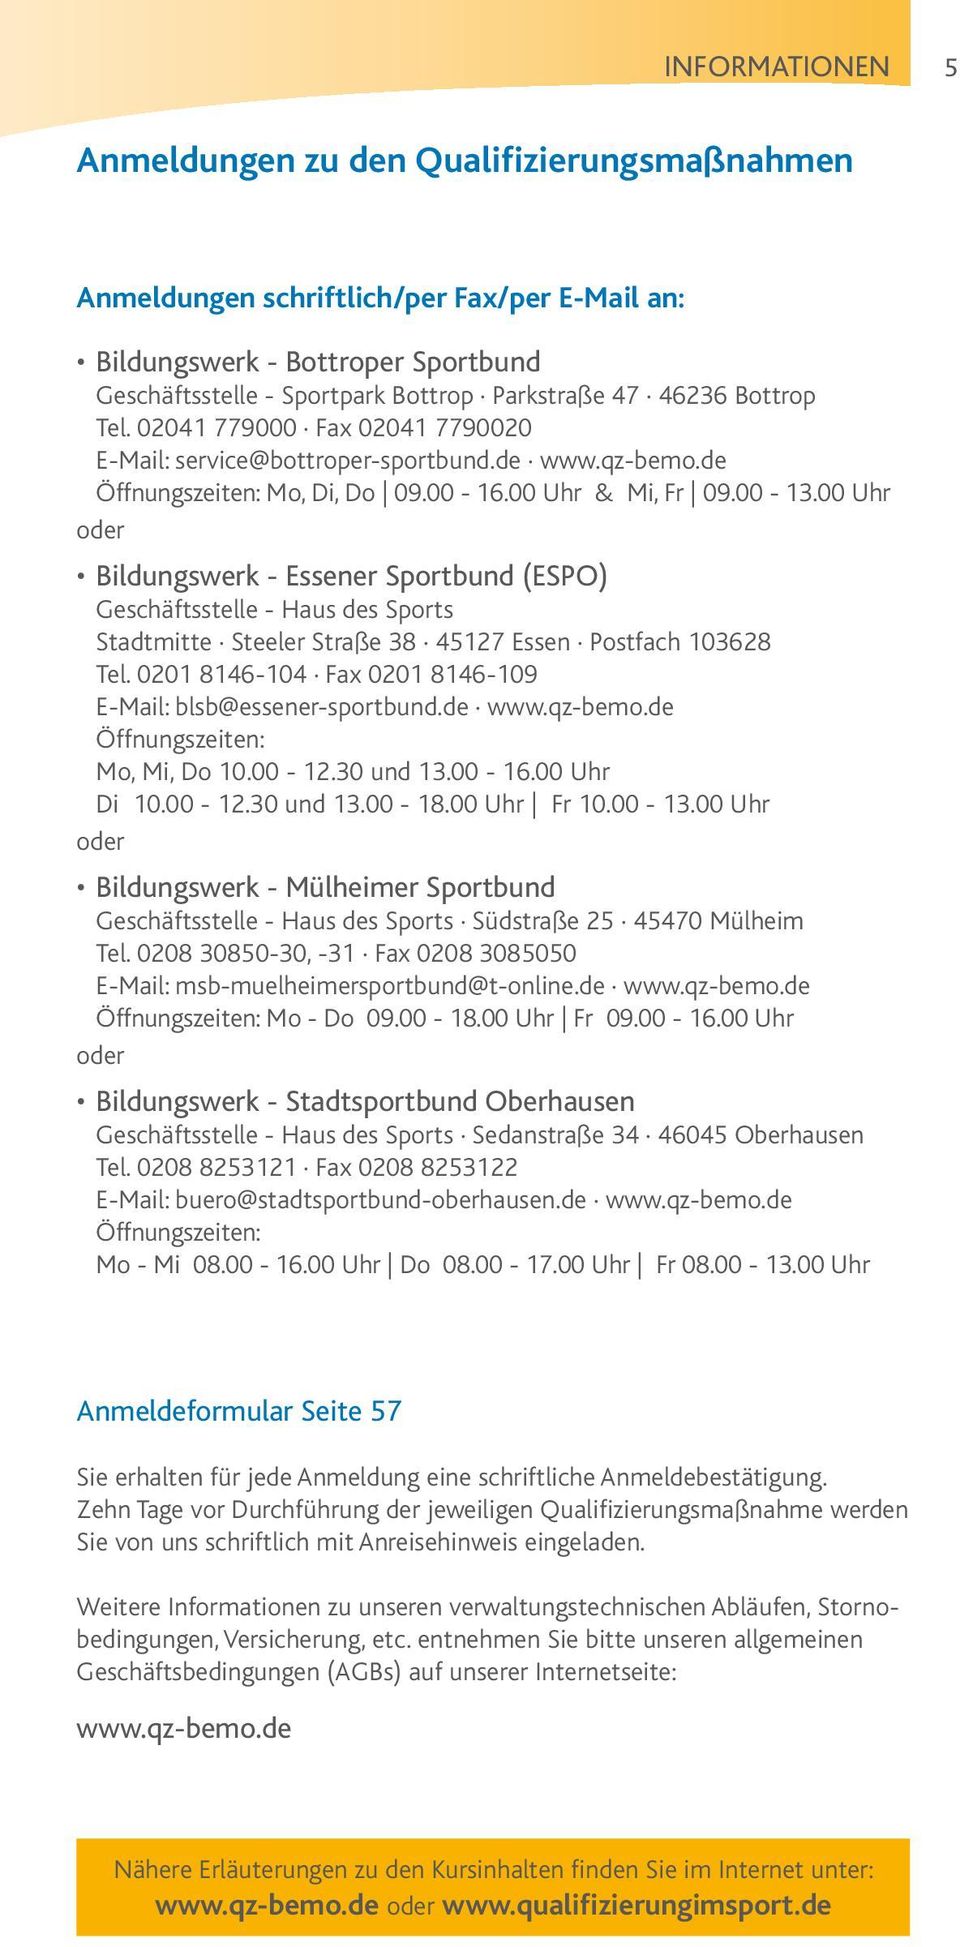 00 Uhr oder Bildungswerk - Essener Sportbund (ESPO) Geschäftsstelle - Haus des Sports Stadtmitte Steeler Straße 38 45127 Essen Postfach 103628 Tel.